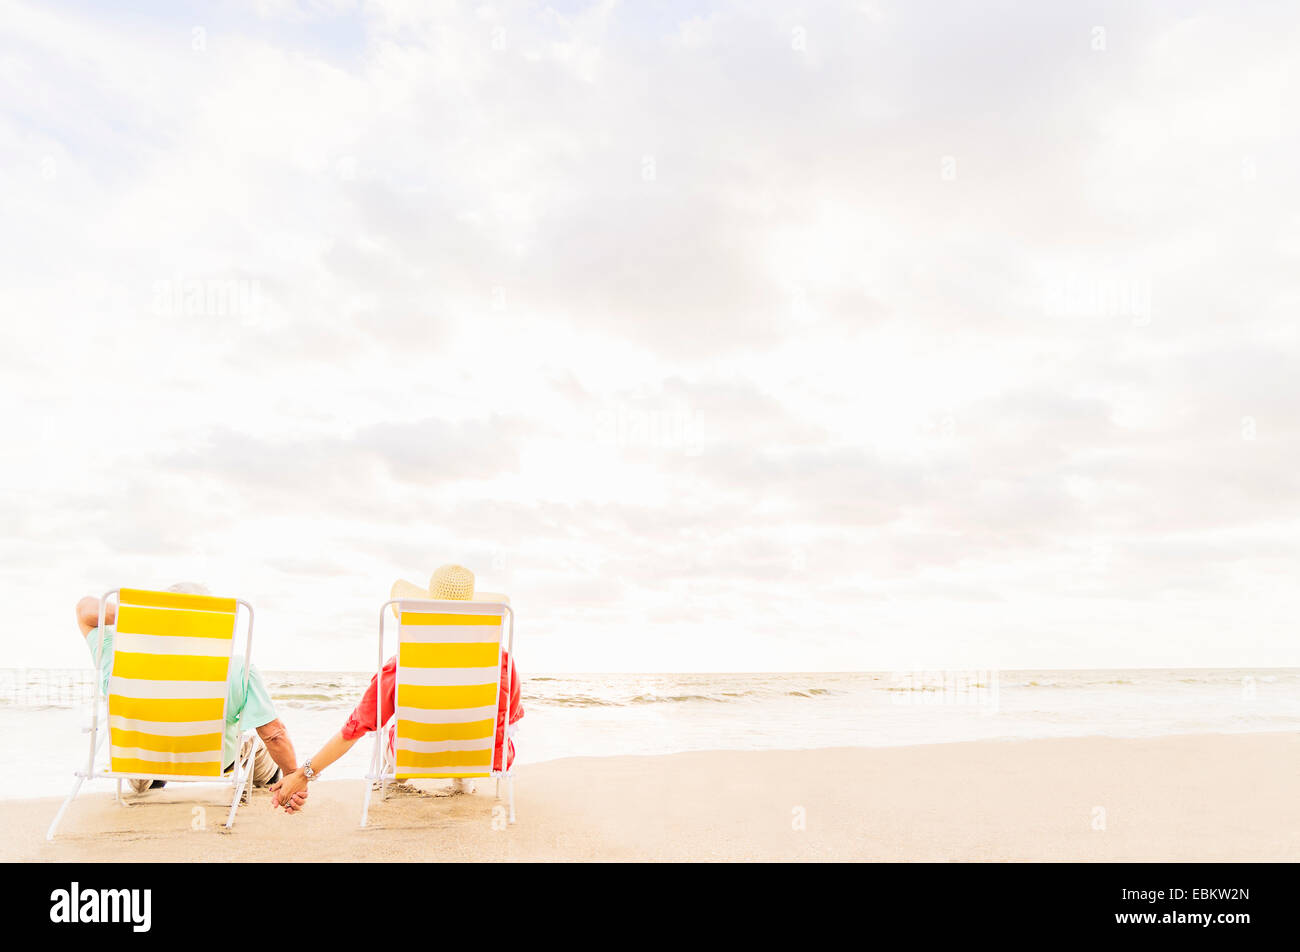 USA, Floride, Jupiter, vue arrière du couple assis dans des chaises longues sur la plage Banque D'Images